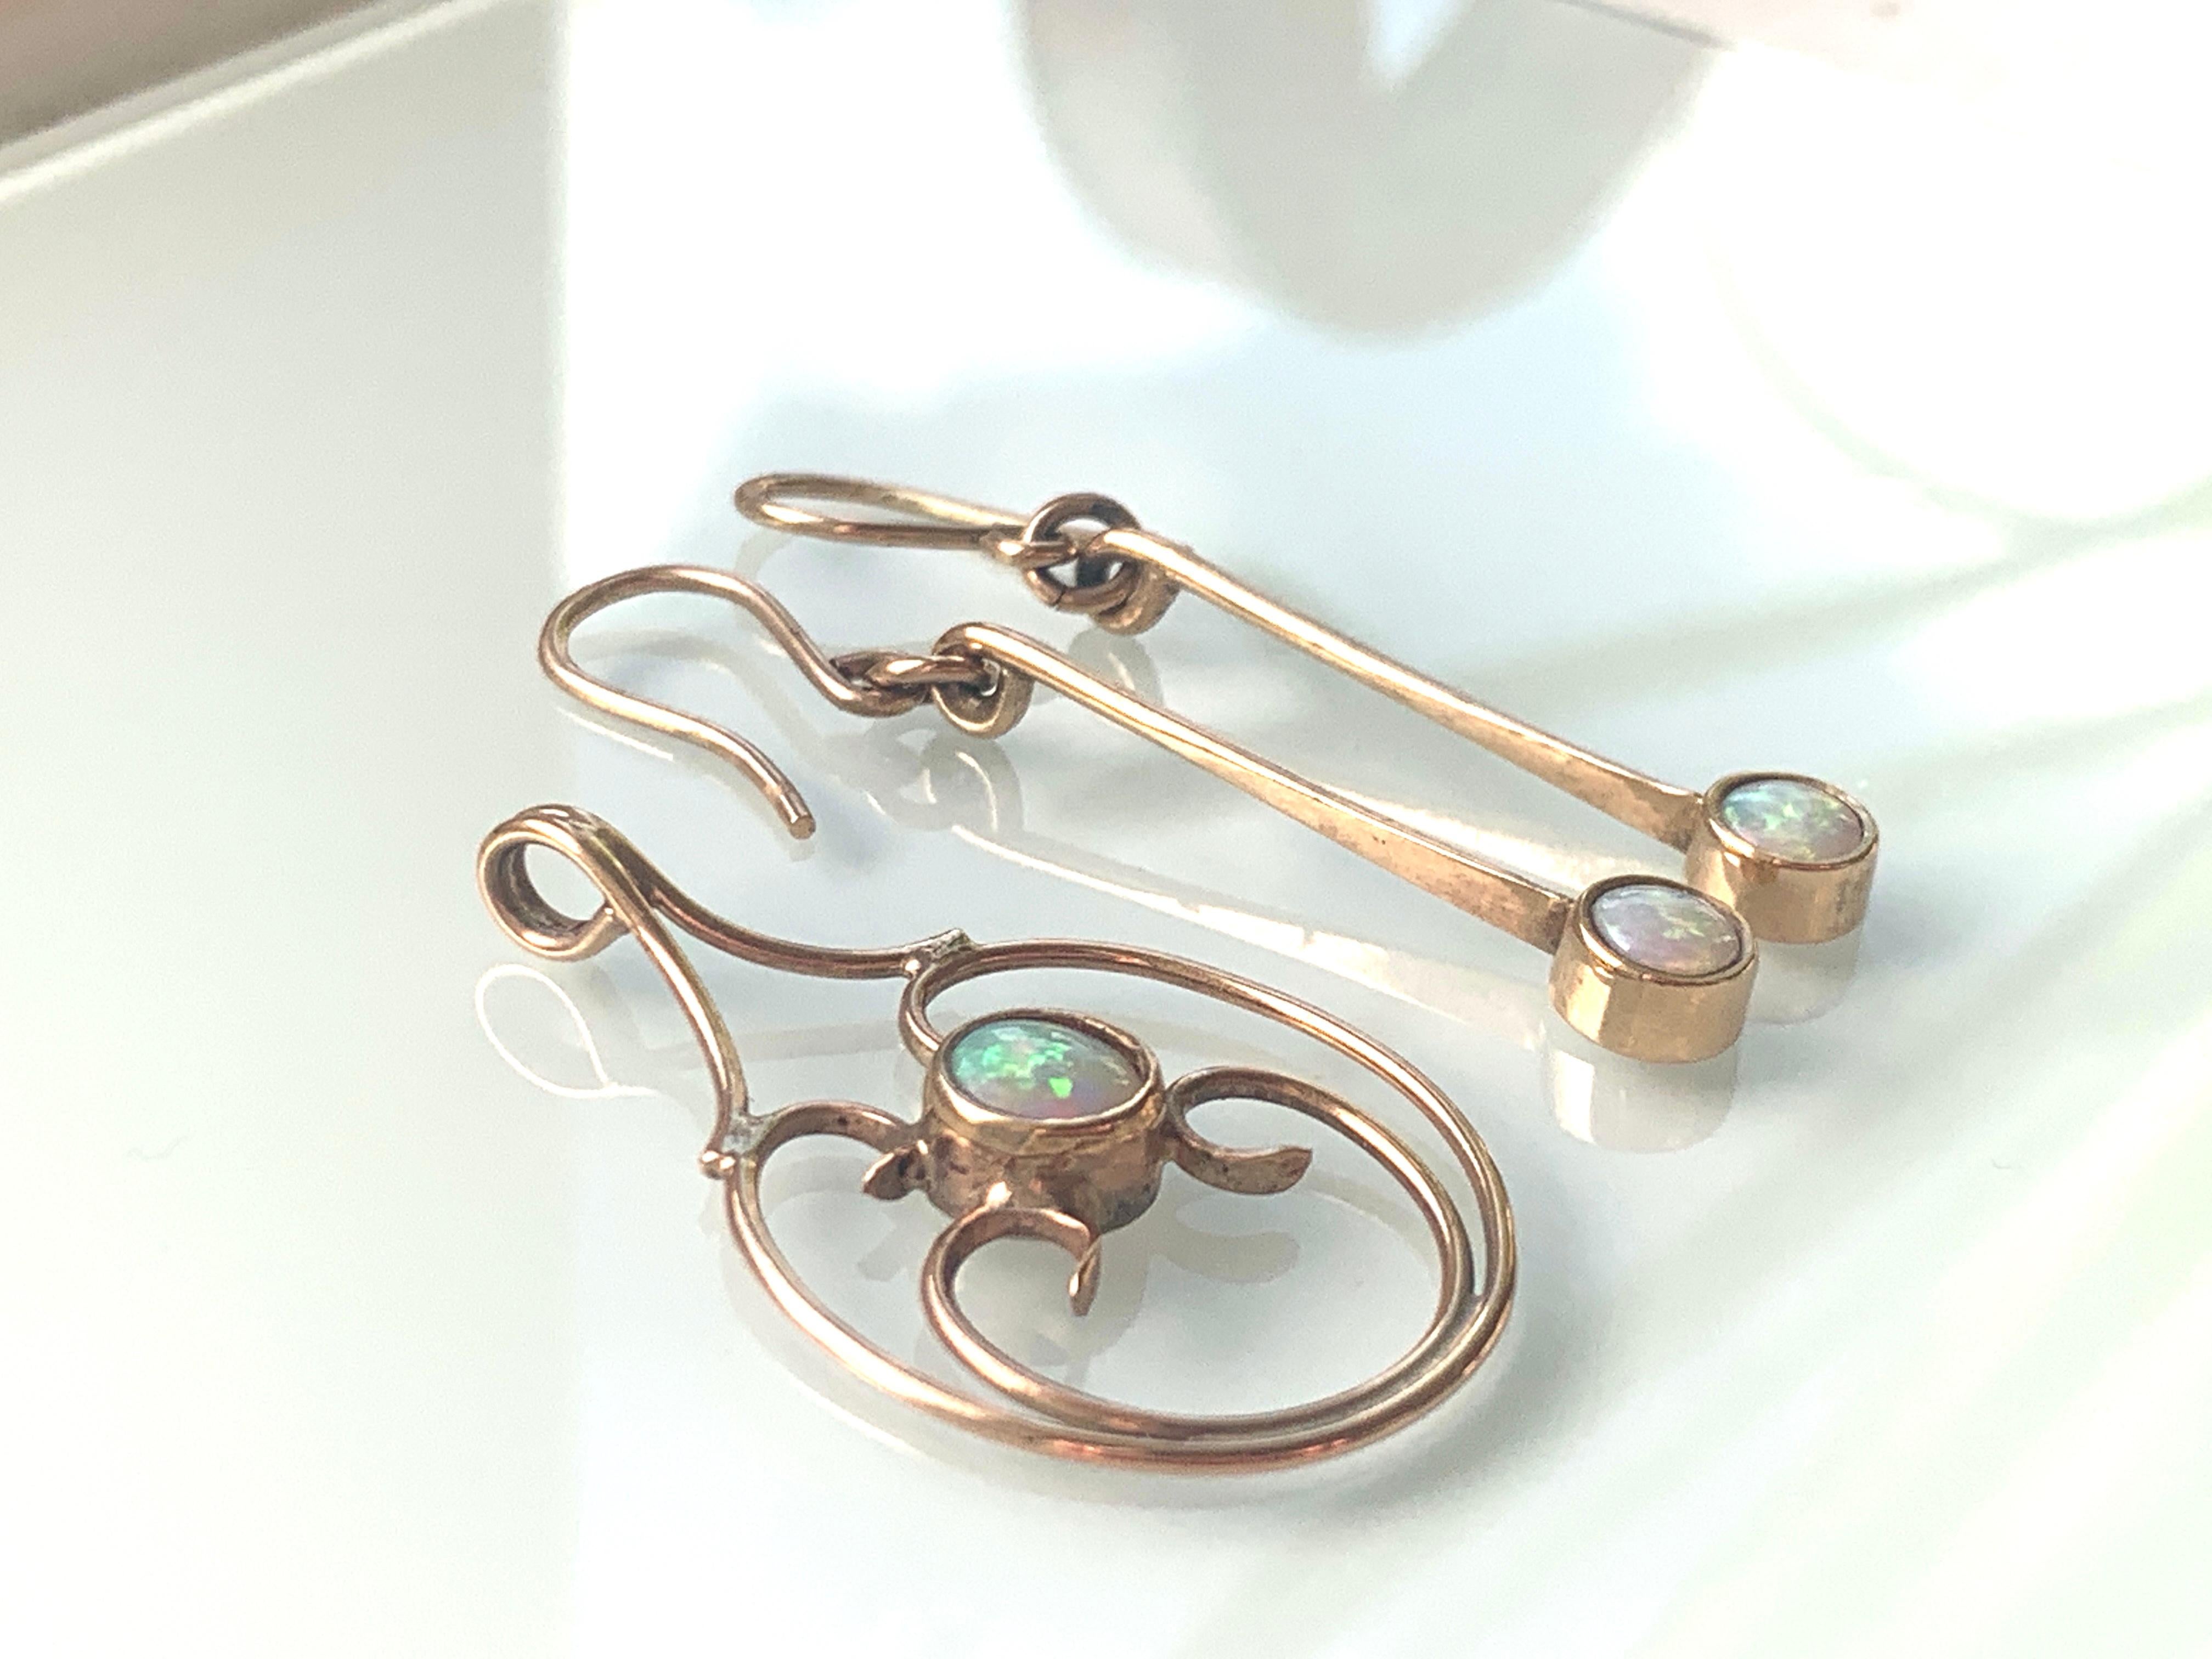 Magnifique pendentif opale en or 9ct
avec boucles d'oreilles assorties
Orfèvre de qualité
Longueur des boucles d'oreilles 3cm 
Hauteur du pendentif 3,75 cm
